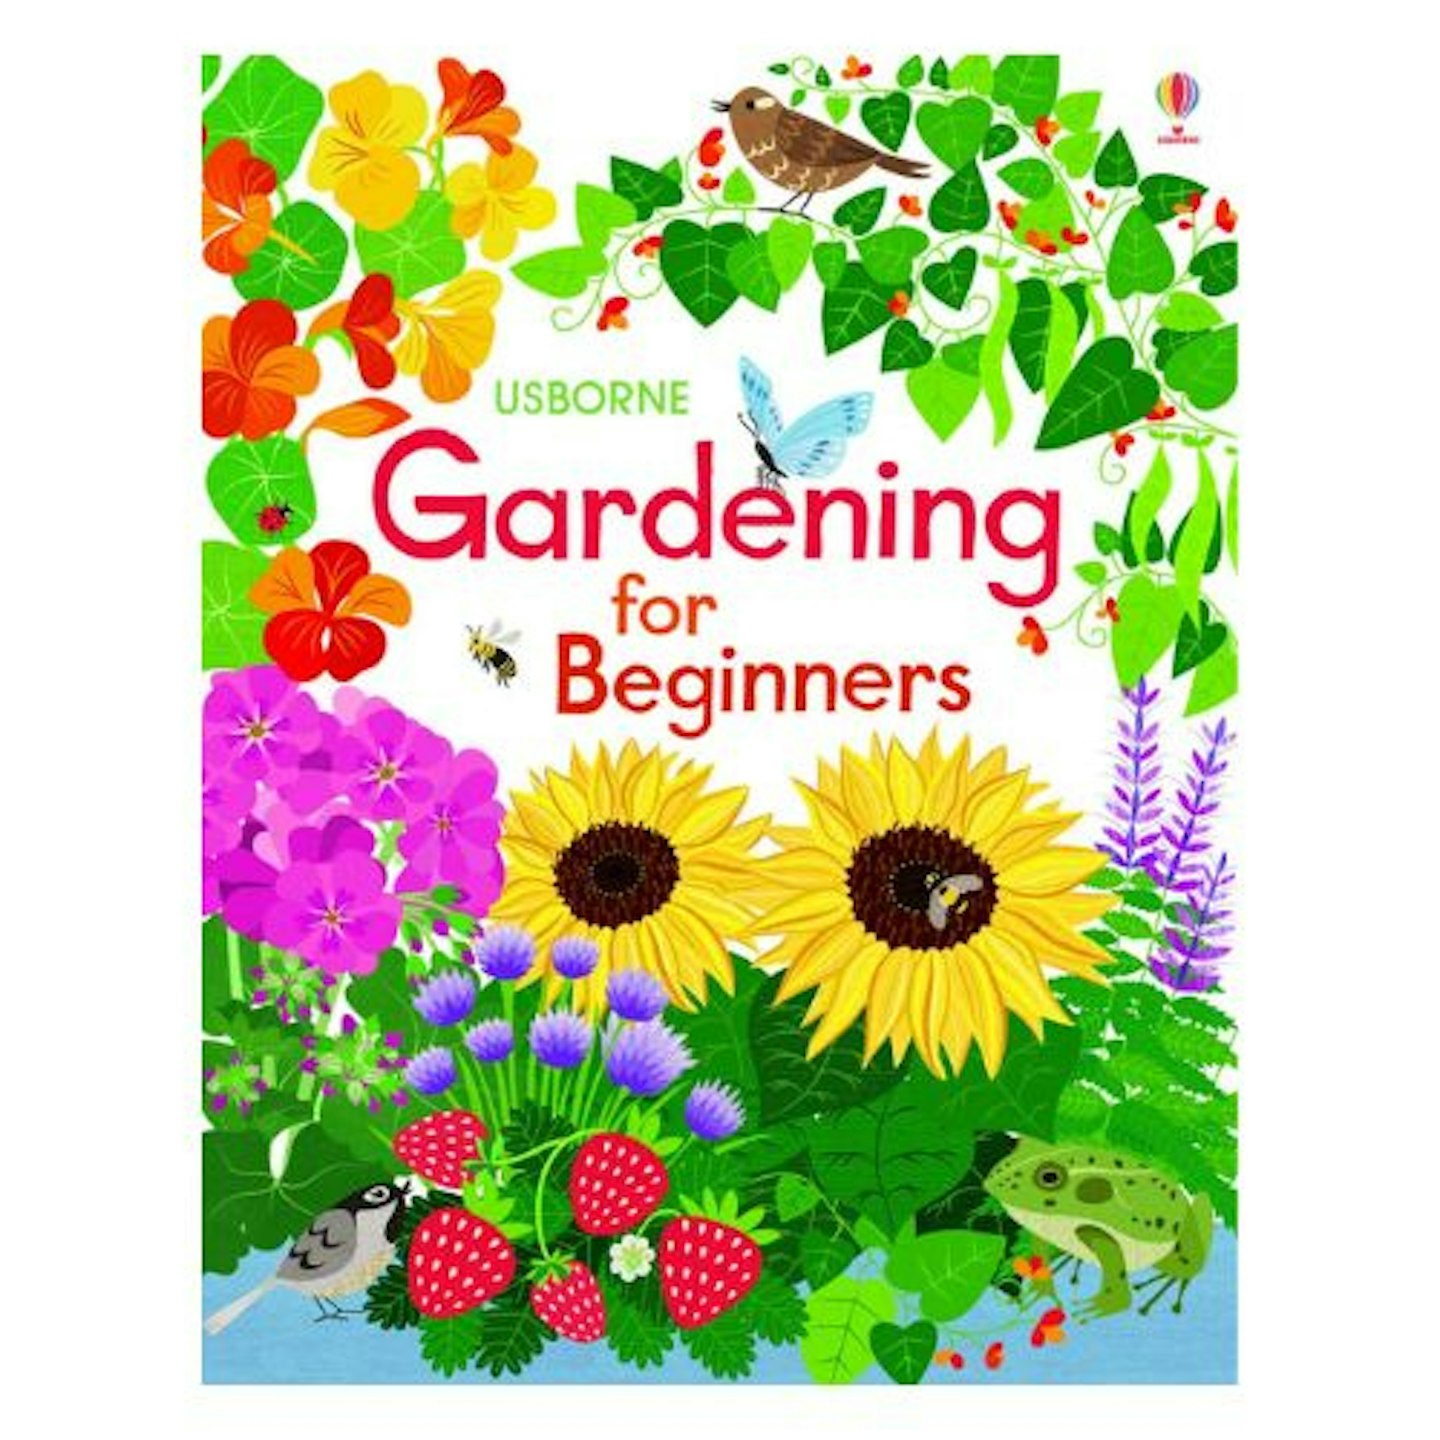 Best Gardening Books for Beginners Usborne's Gardening for Beginners